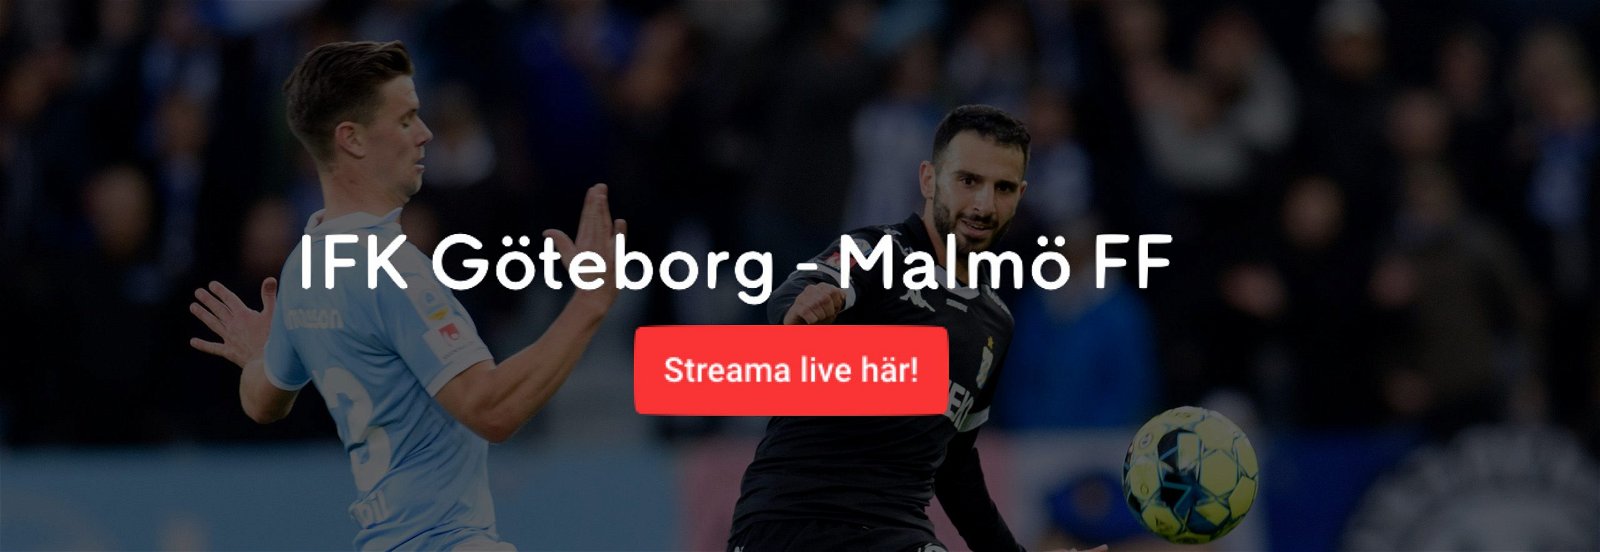 Malmö FF IFK Göteborg live stream gratis? Streama Göteborg MFF livestream!